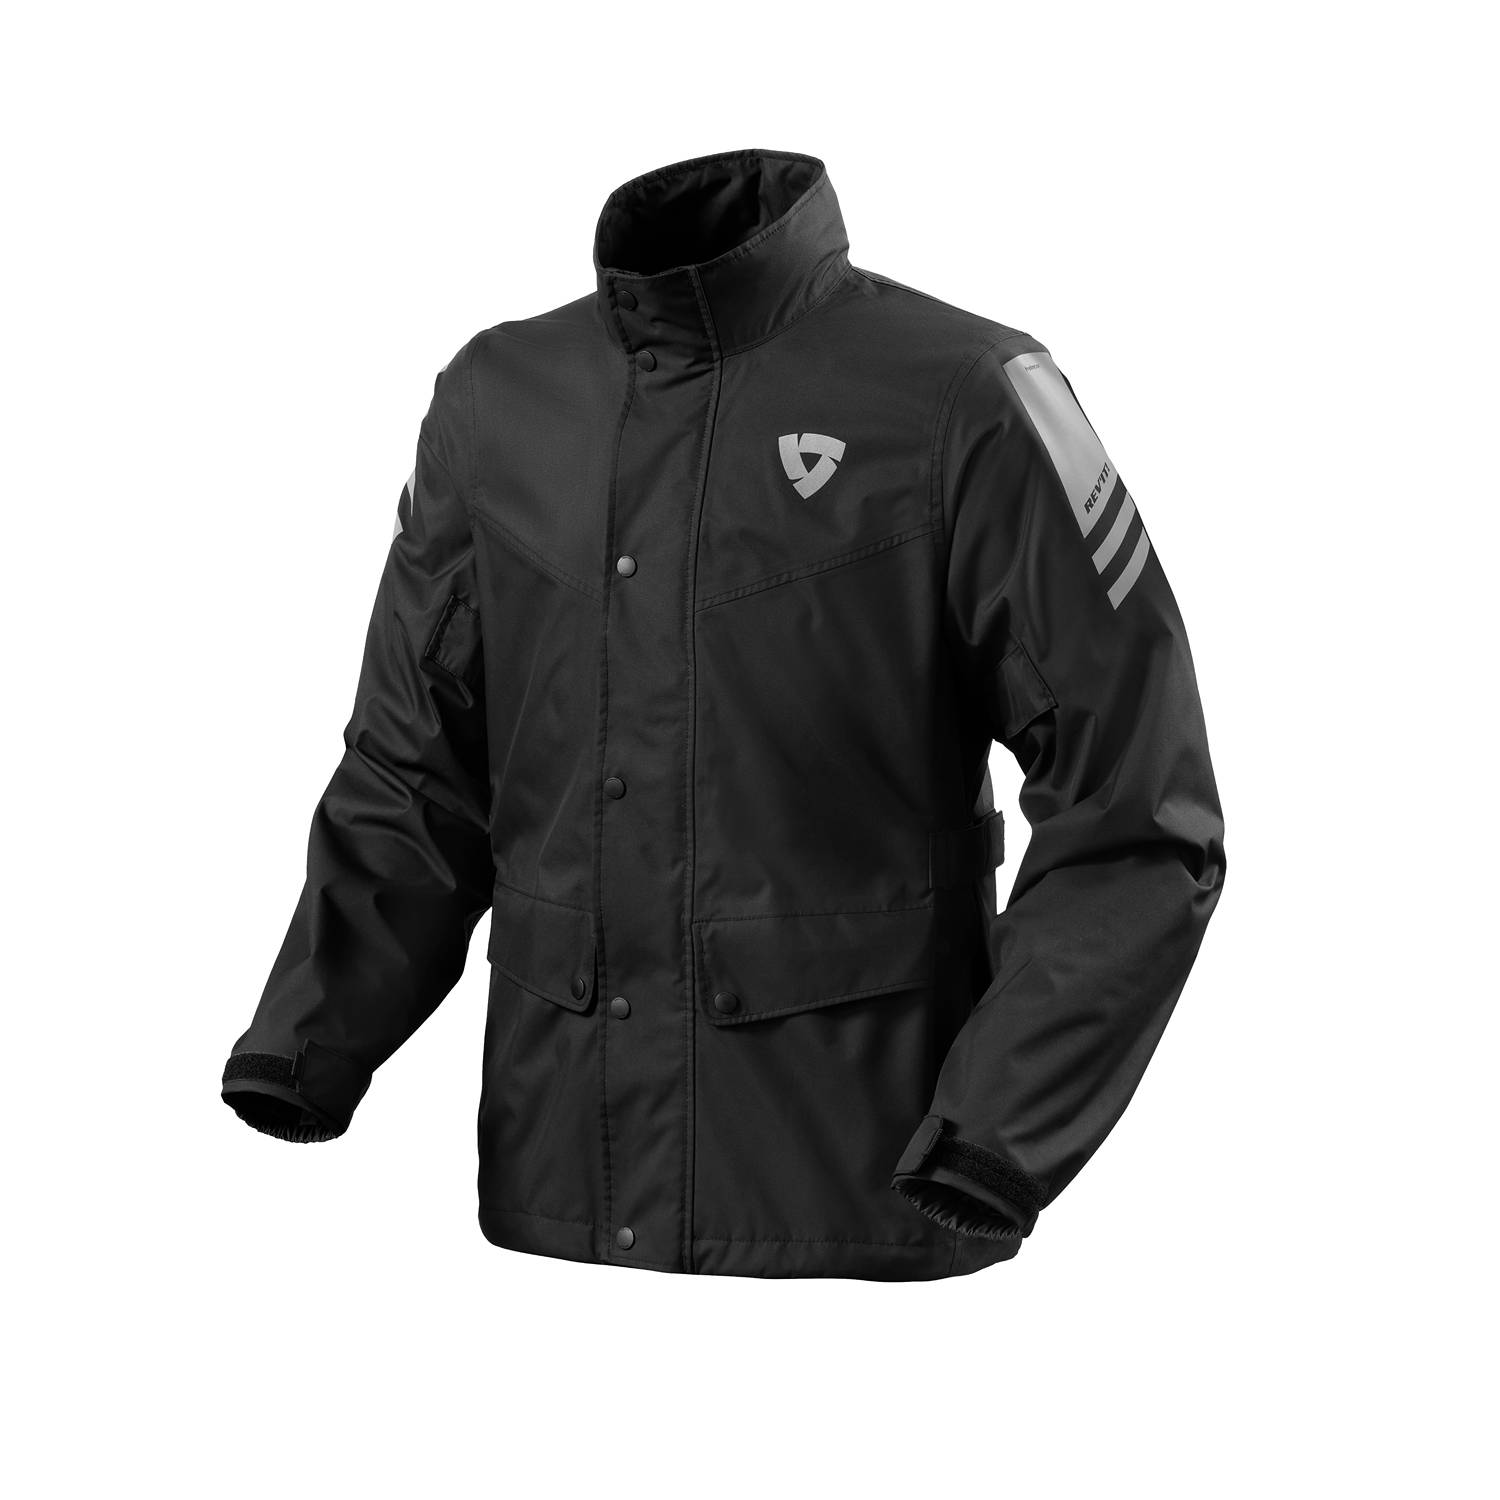 Image of REV'IT! Nitric 4 H2O Rain Jacket Black Size 2XL EN